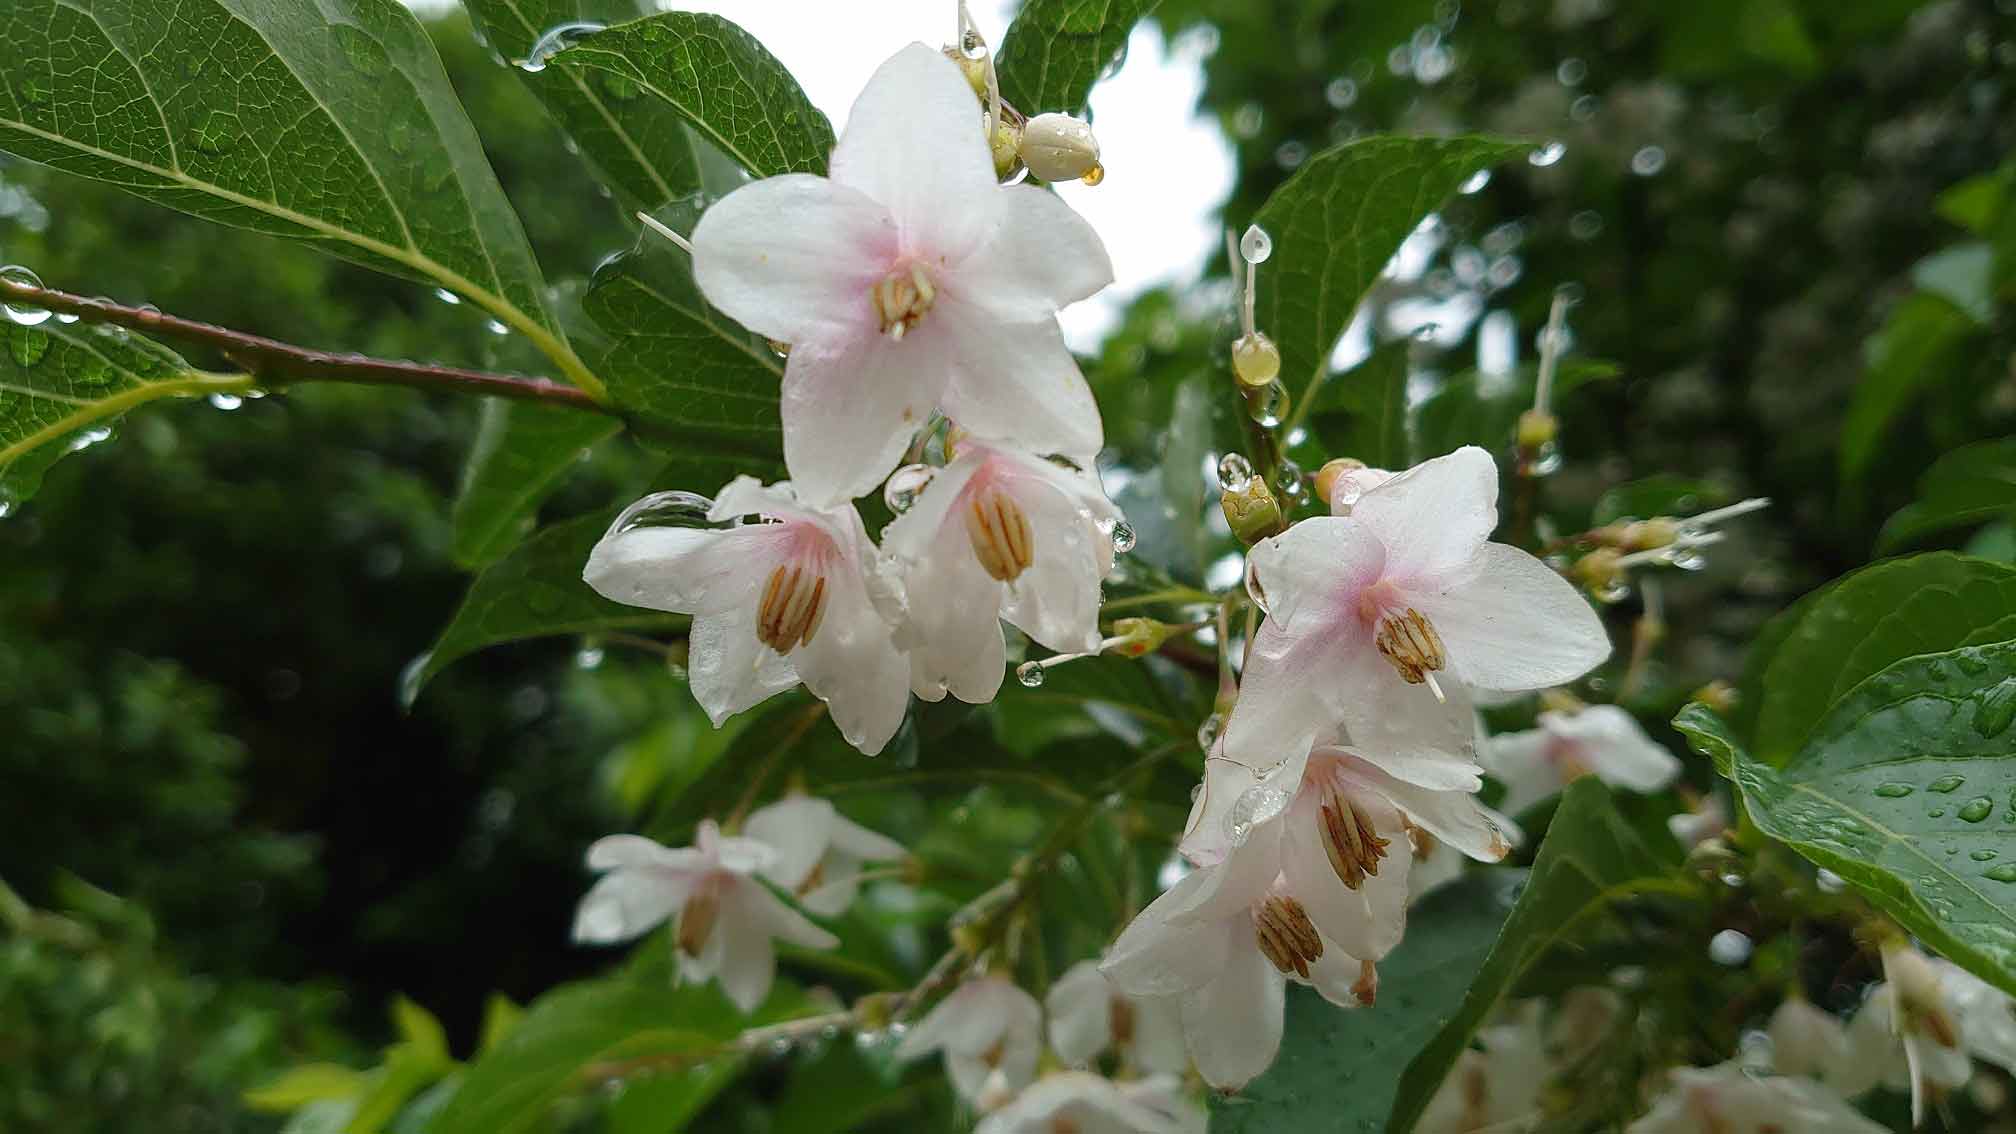 公園四季報 エゴノキの花が咲き始めました 港南緑水公園 港区芝浦港南地区の公園サイト